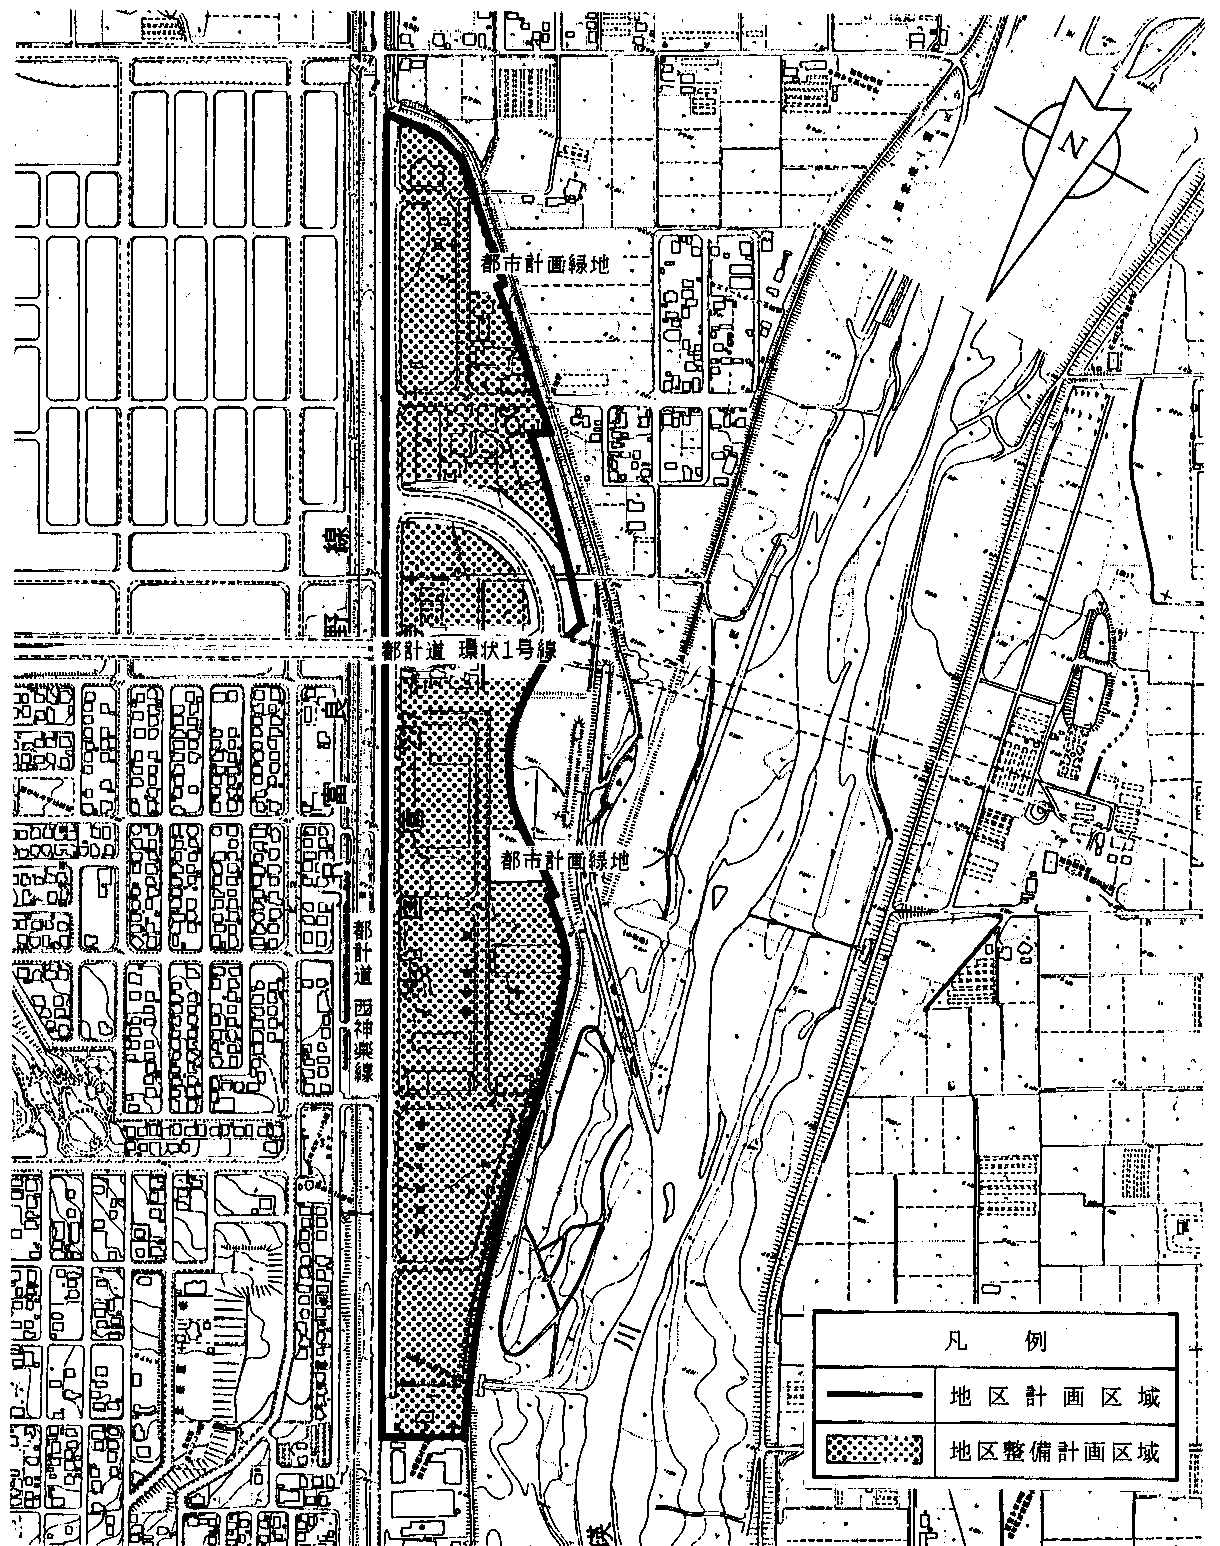 西神楽1線地区地区計画計画図